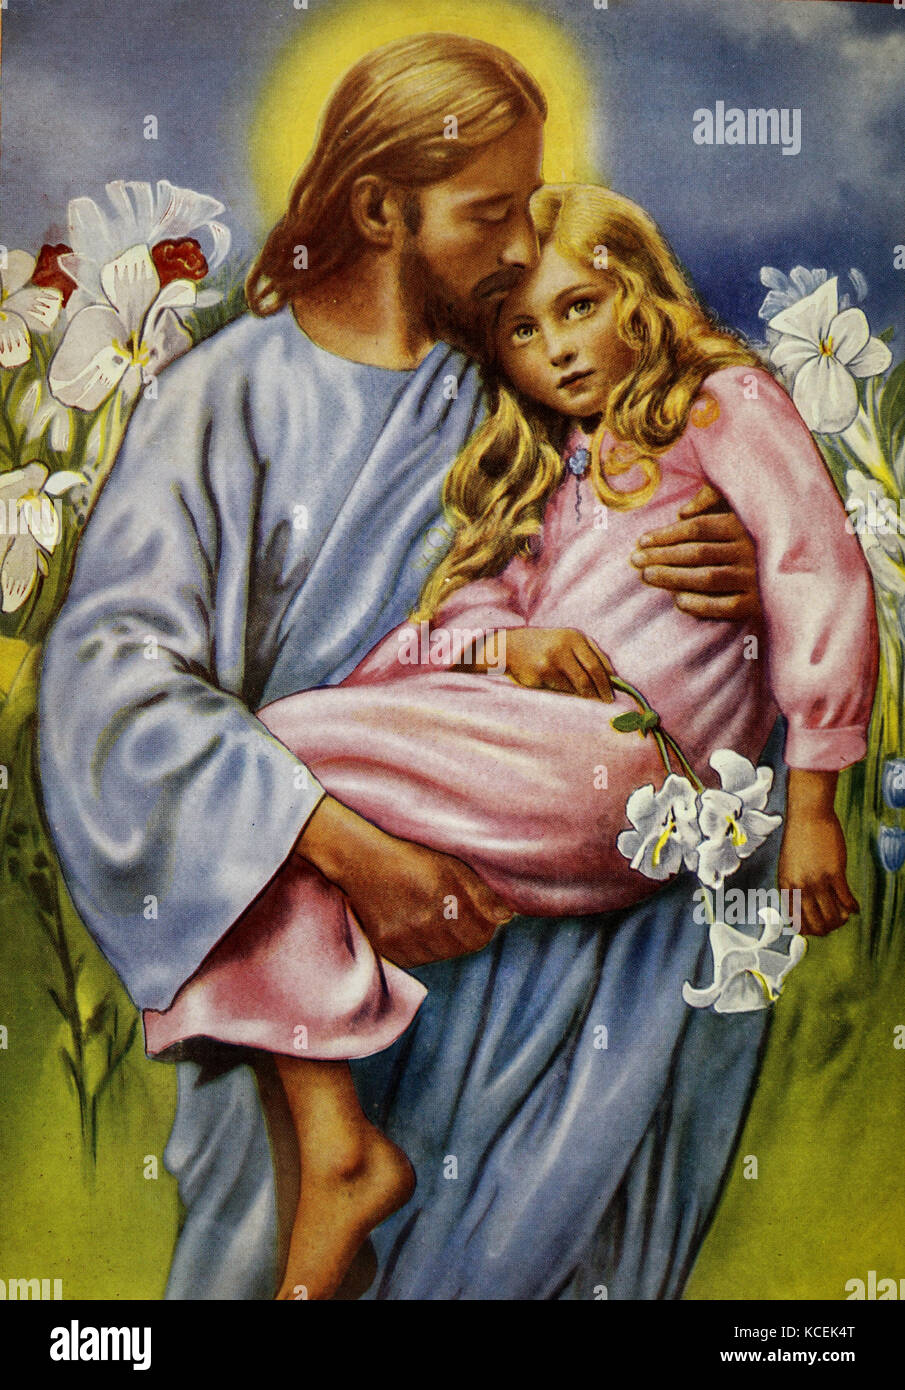 Pintura representando a Jesucristo, la celebración de una niña en sus brazos. Fecha Siglo XX Foto de stock